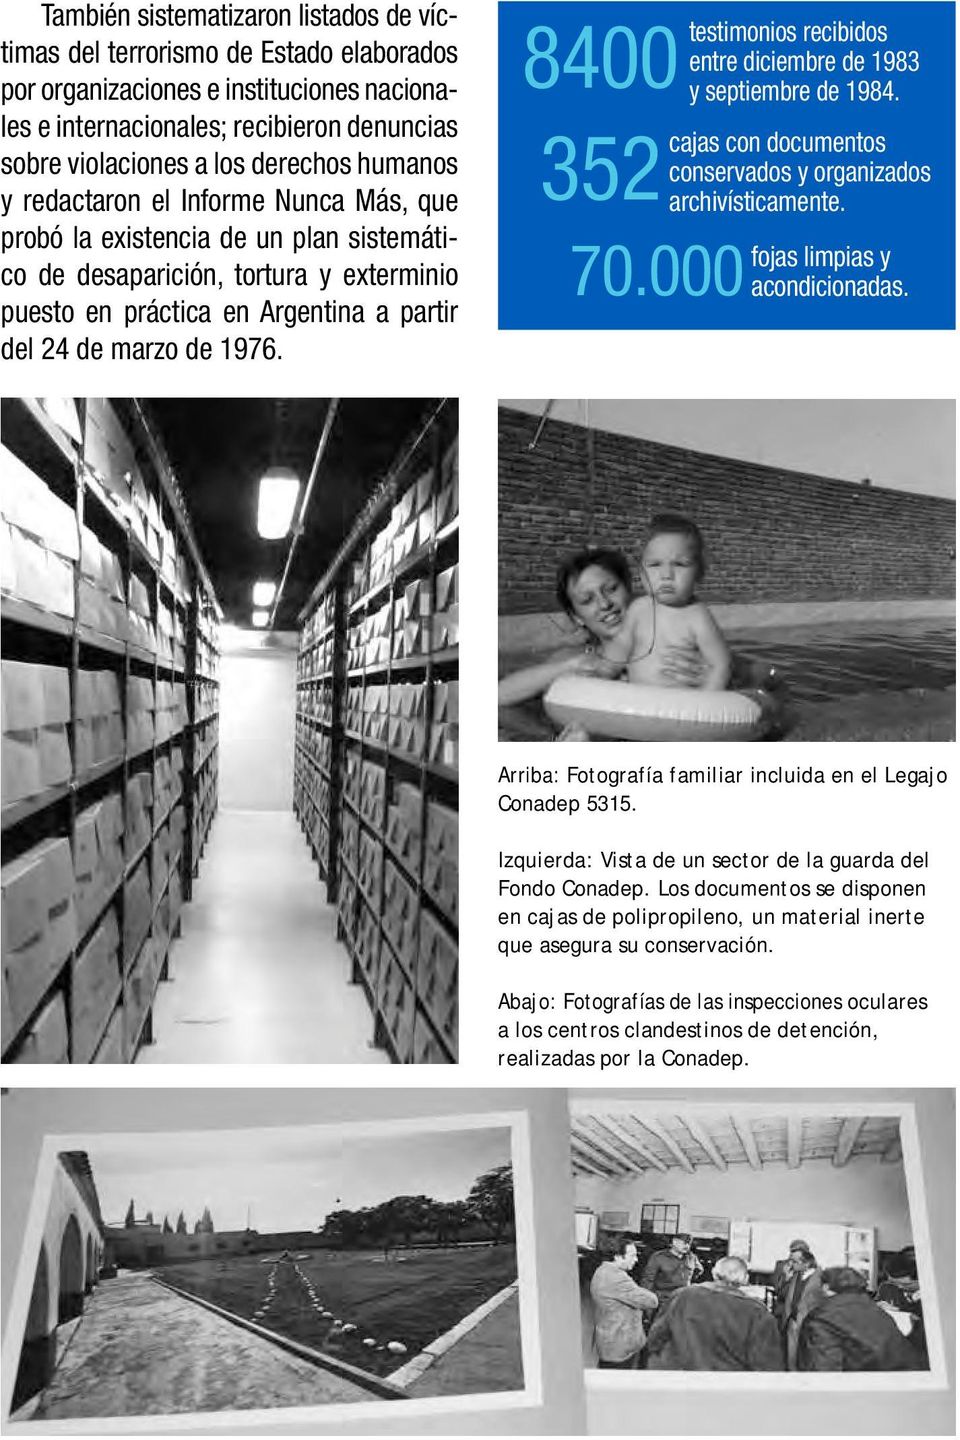 8400 352 70.000 testimonios recibidos entre diciembre de 1983 y septiembre de 1984. cajas con documentos conservados y organizados archivísticamente. fojas limpias y acondicionadas.